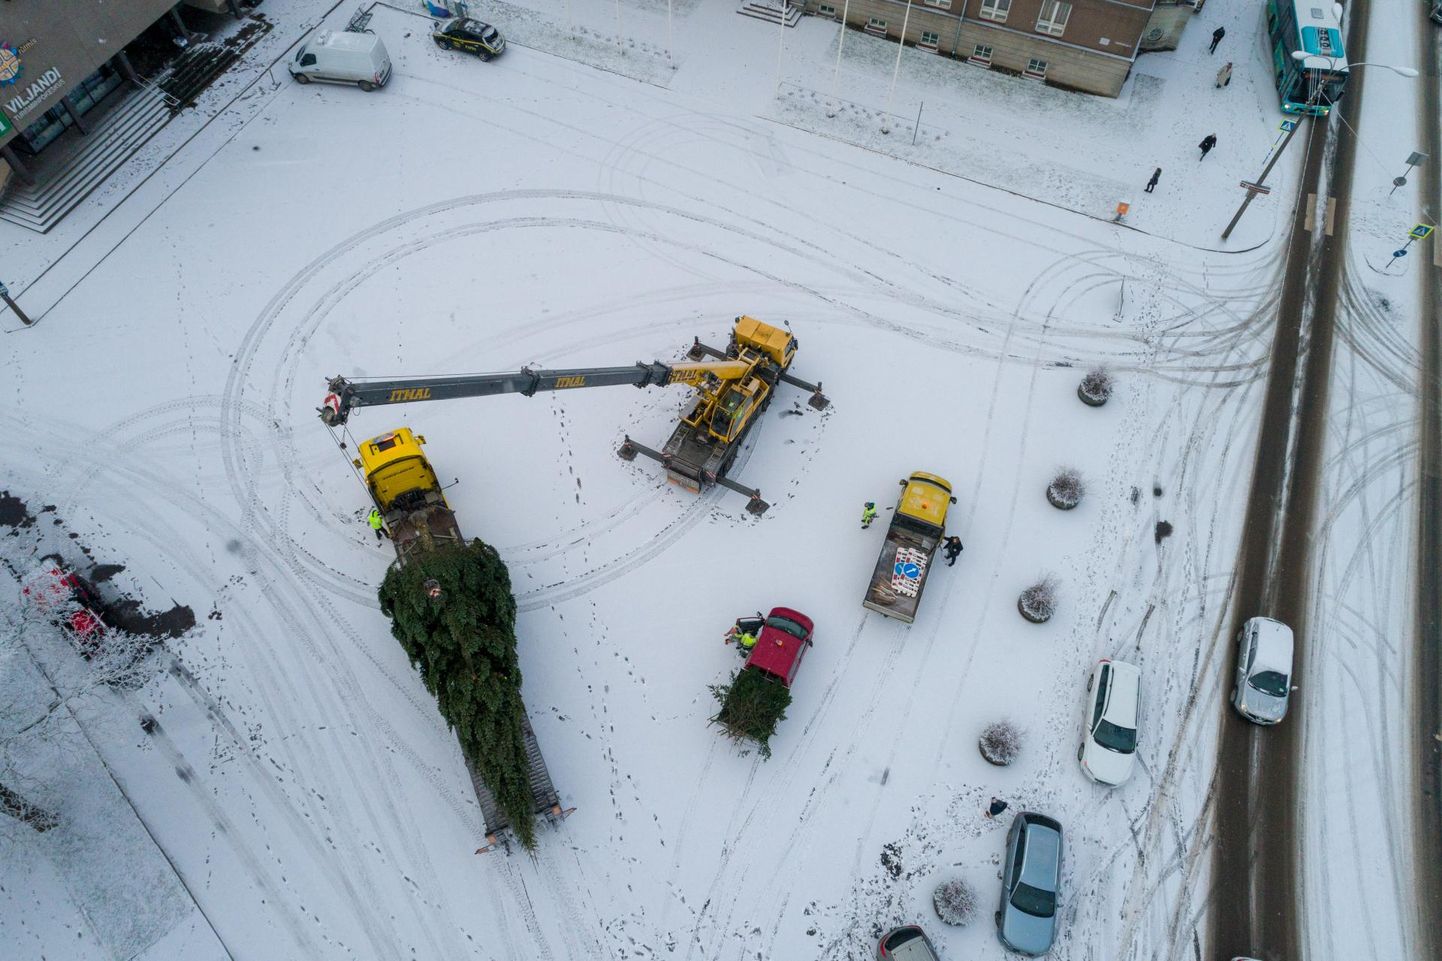 Juba novembri hakul Vabaduse platsil püsti pandud jõulupuu oli tänavu traditsioonilise kuuse asemel Siberi Nulg. Fotol nulu püstitamise moment.